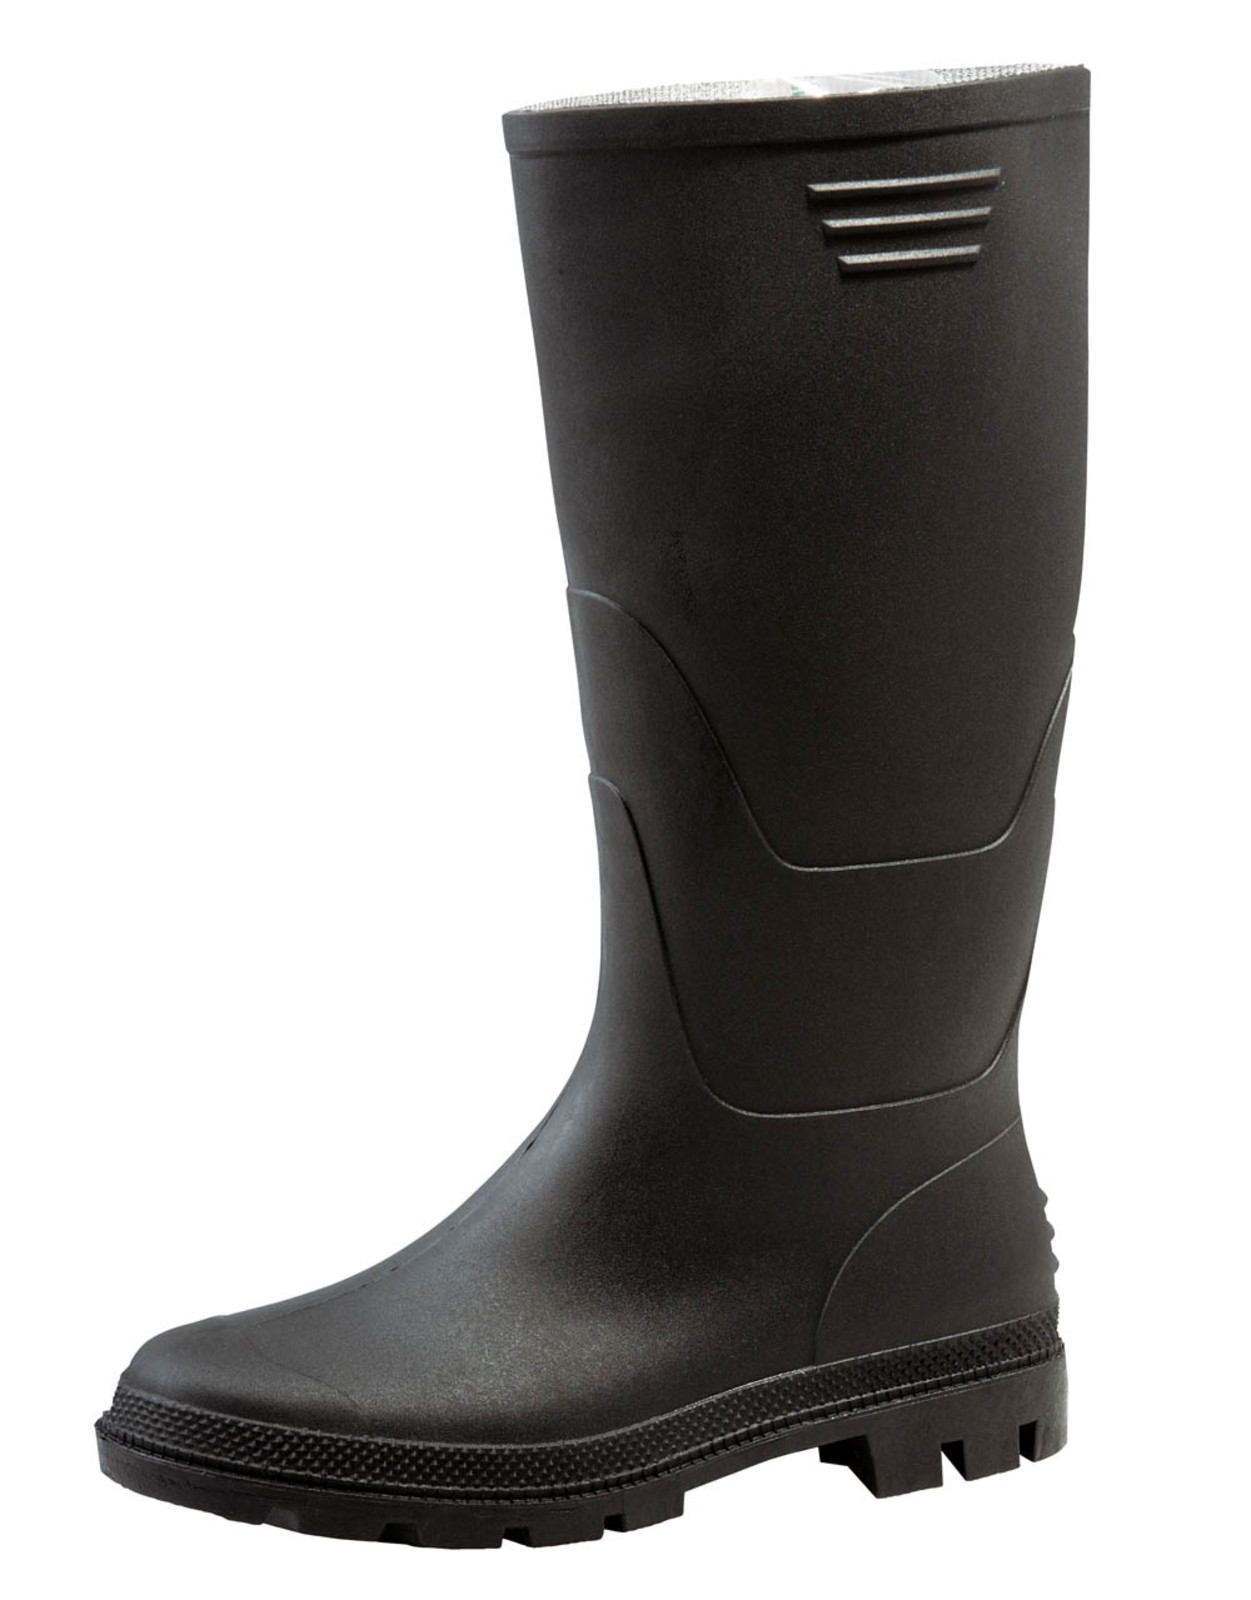 Gumáky Boots Ginocchio PVC - veľkosť: 46, farba: čierna